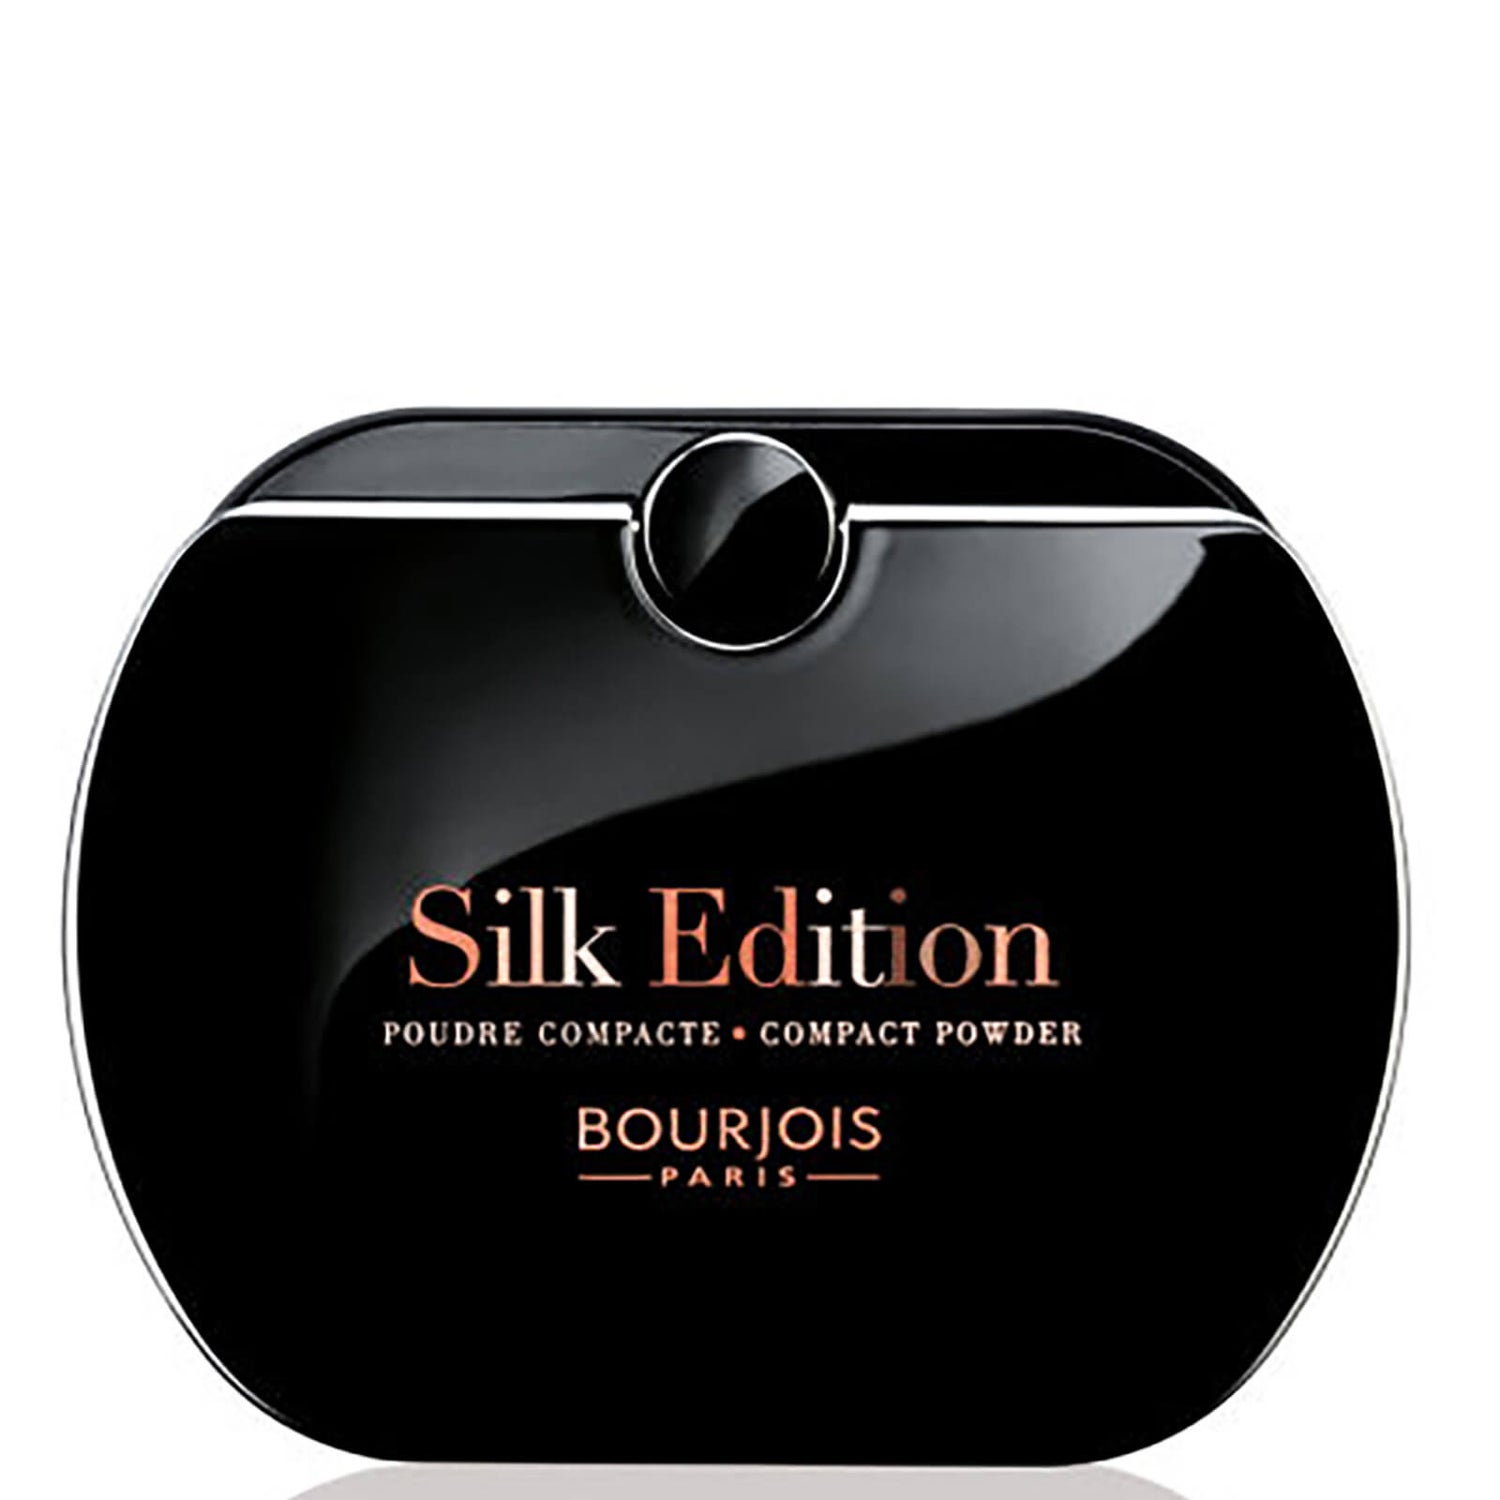 Bourjois Silk Edition Powder - Various Shades